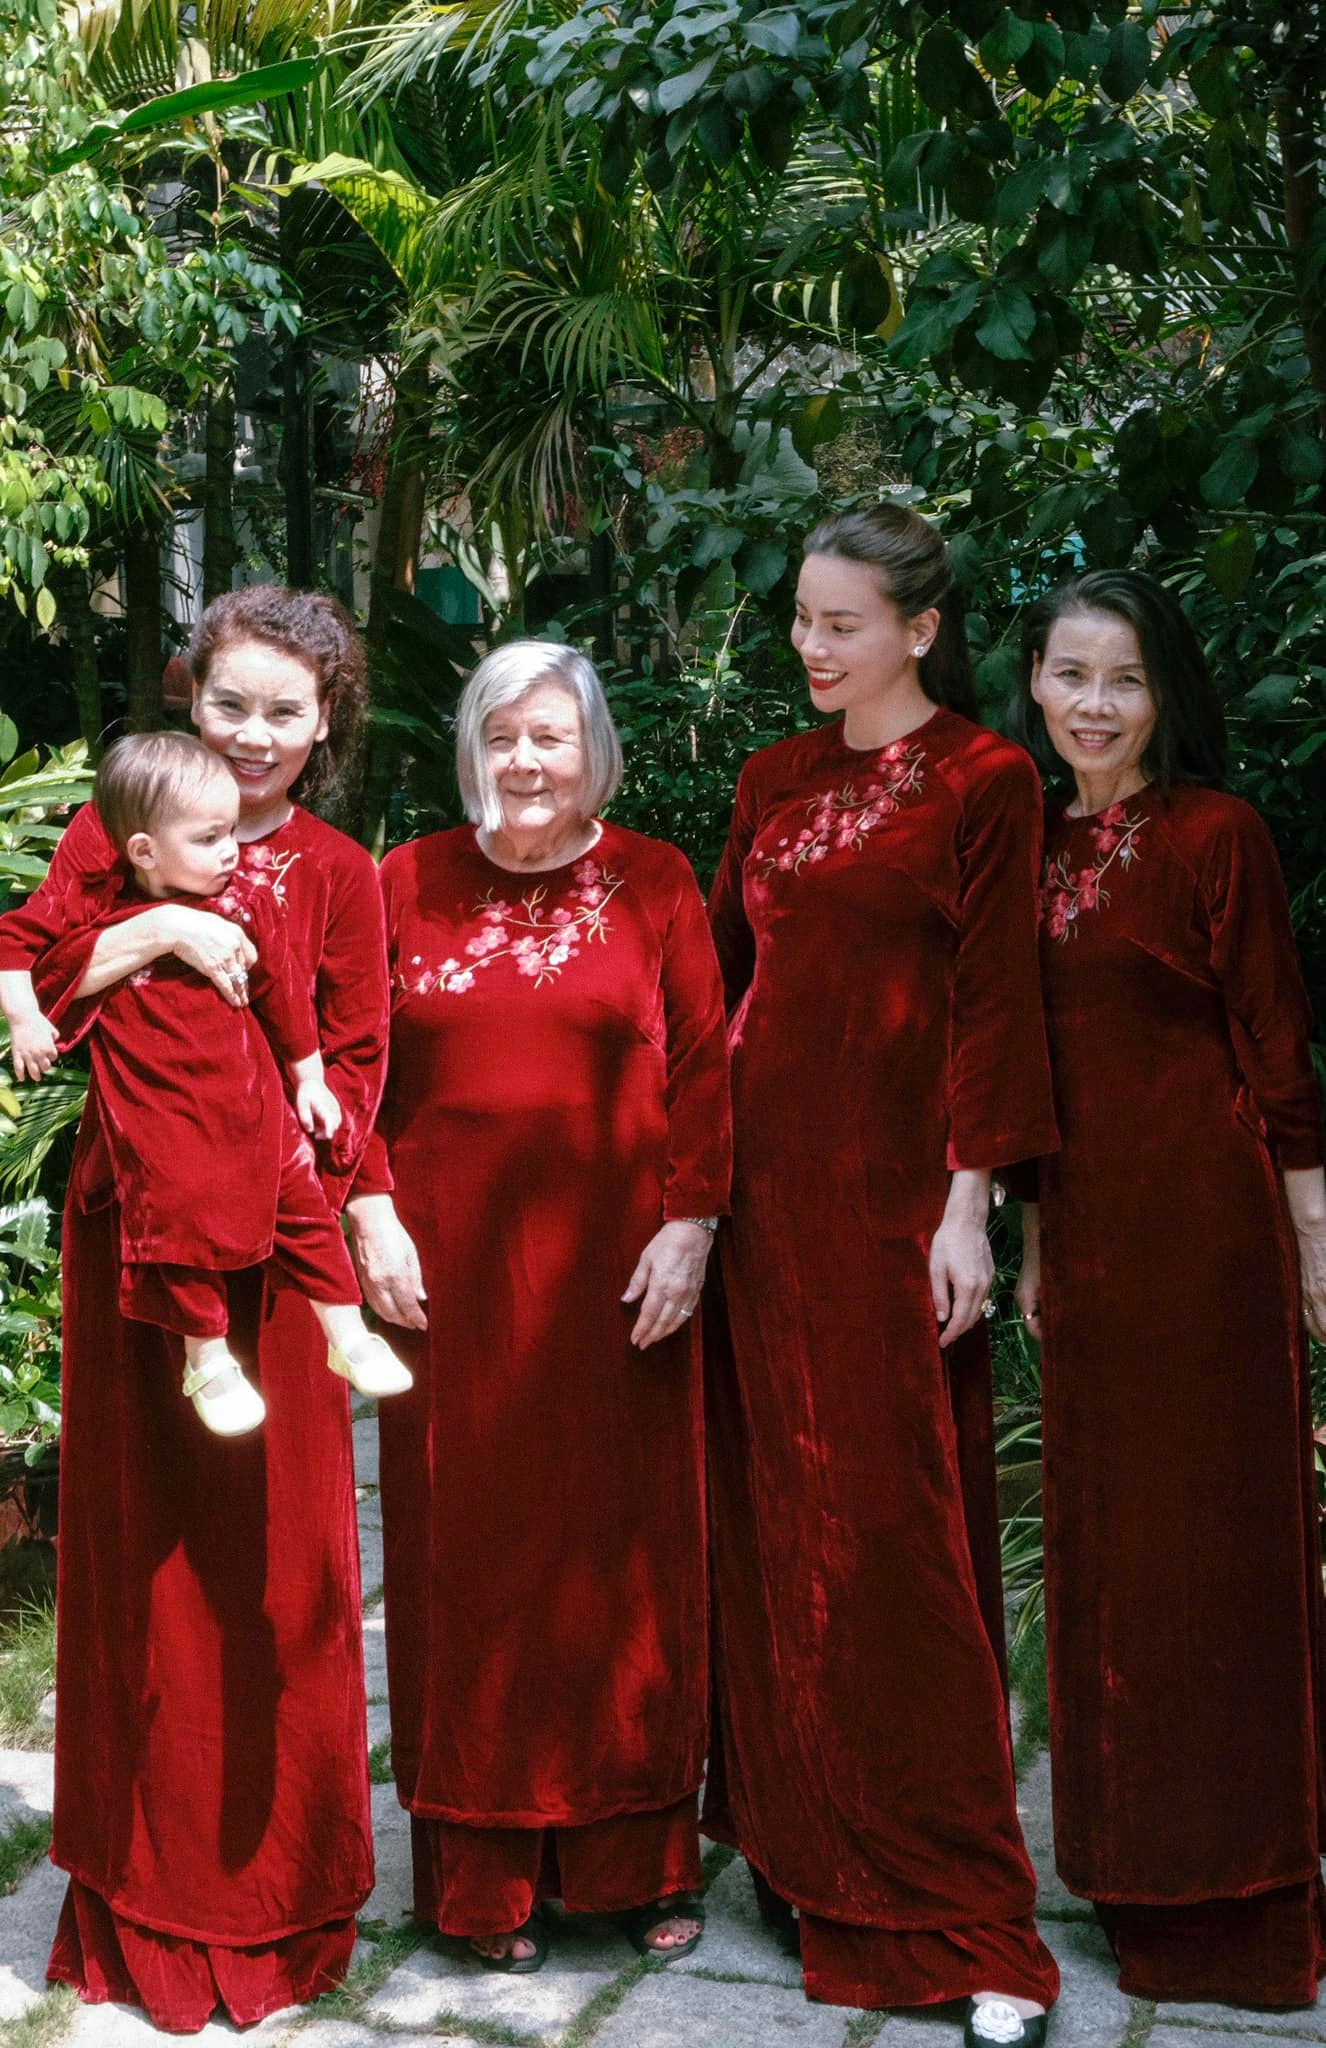 Gia đình Hồ Ngọc Hà rạng rỡ sắc đỏ ngày đầu năm, Leon - Lisa tíu tít diện áo dài du xuân